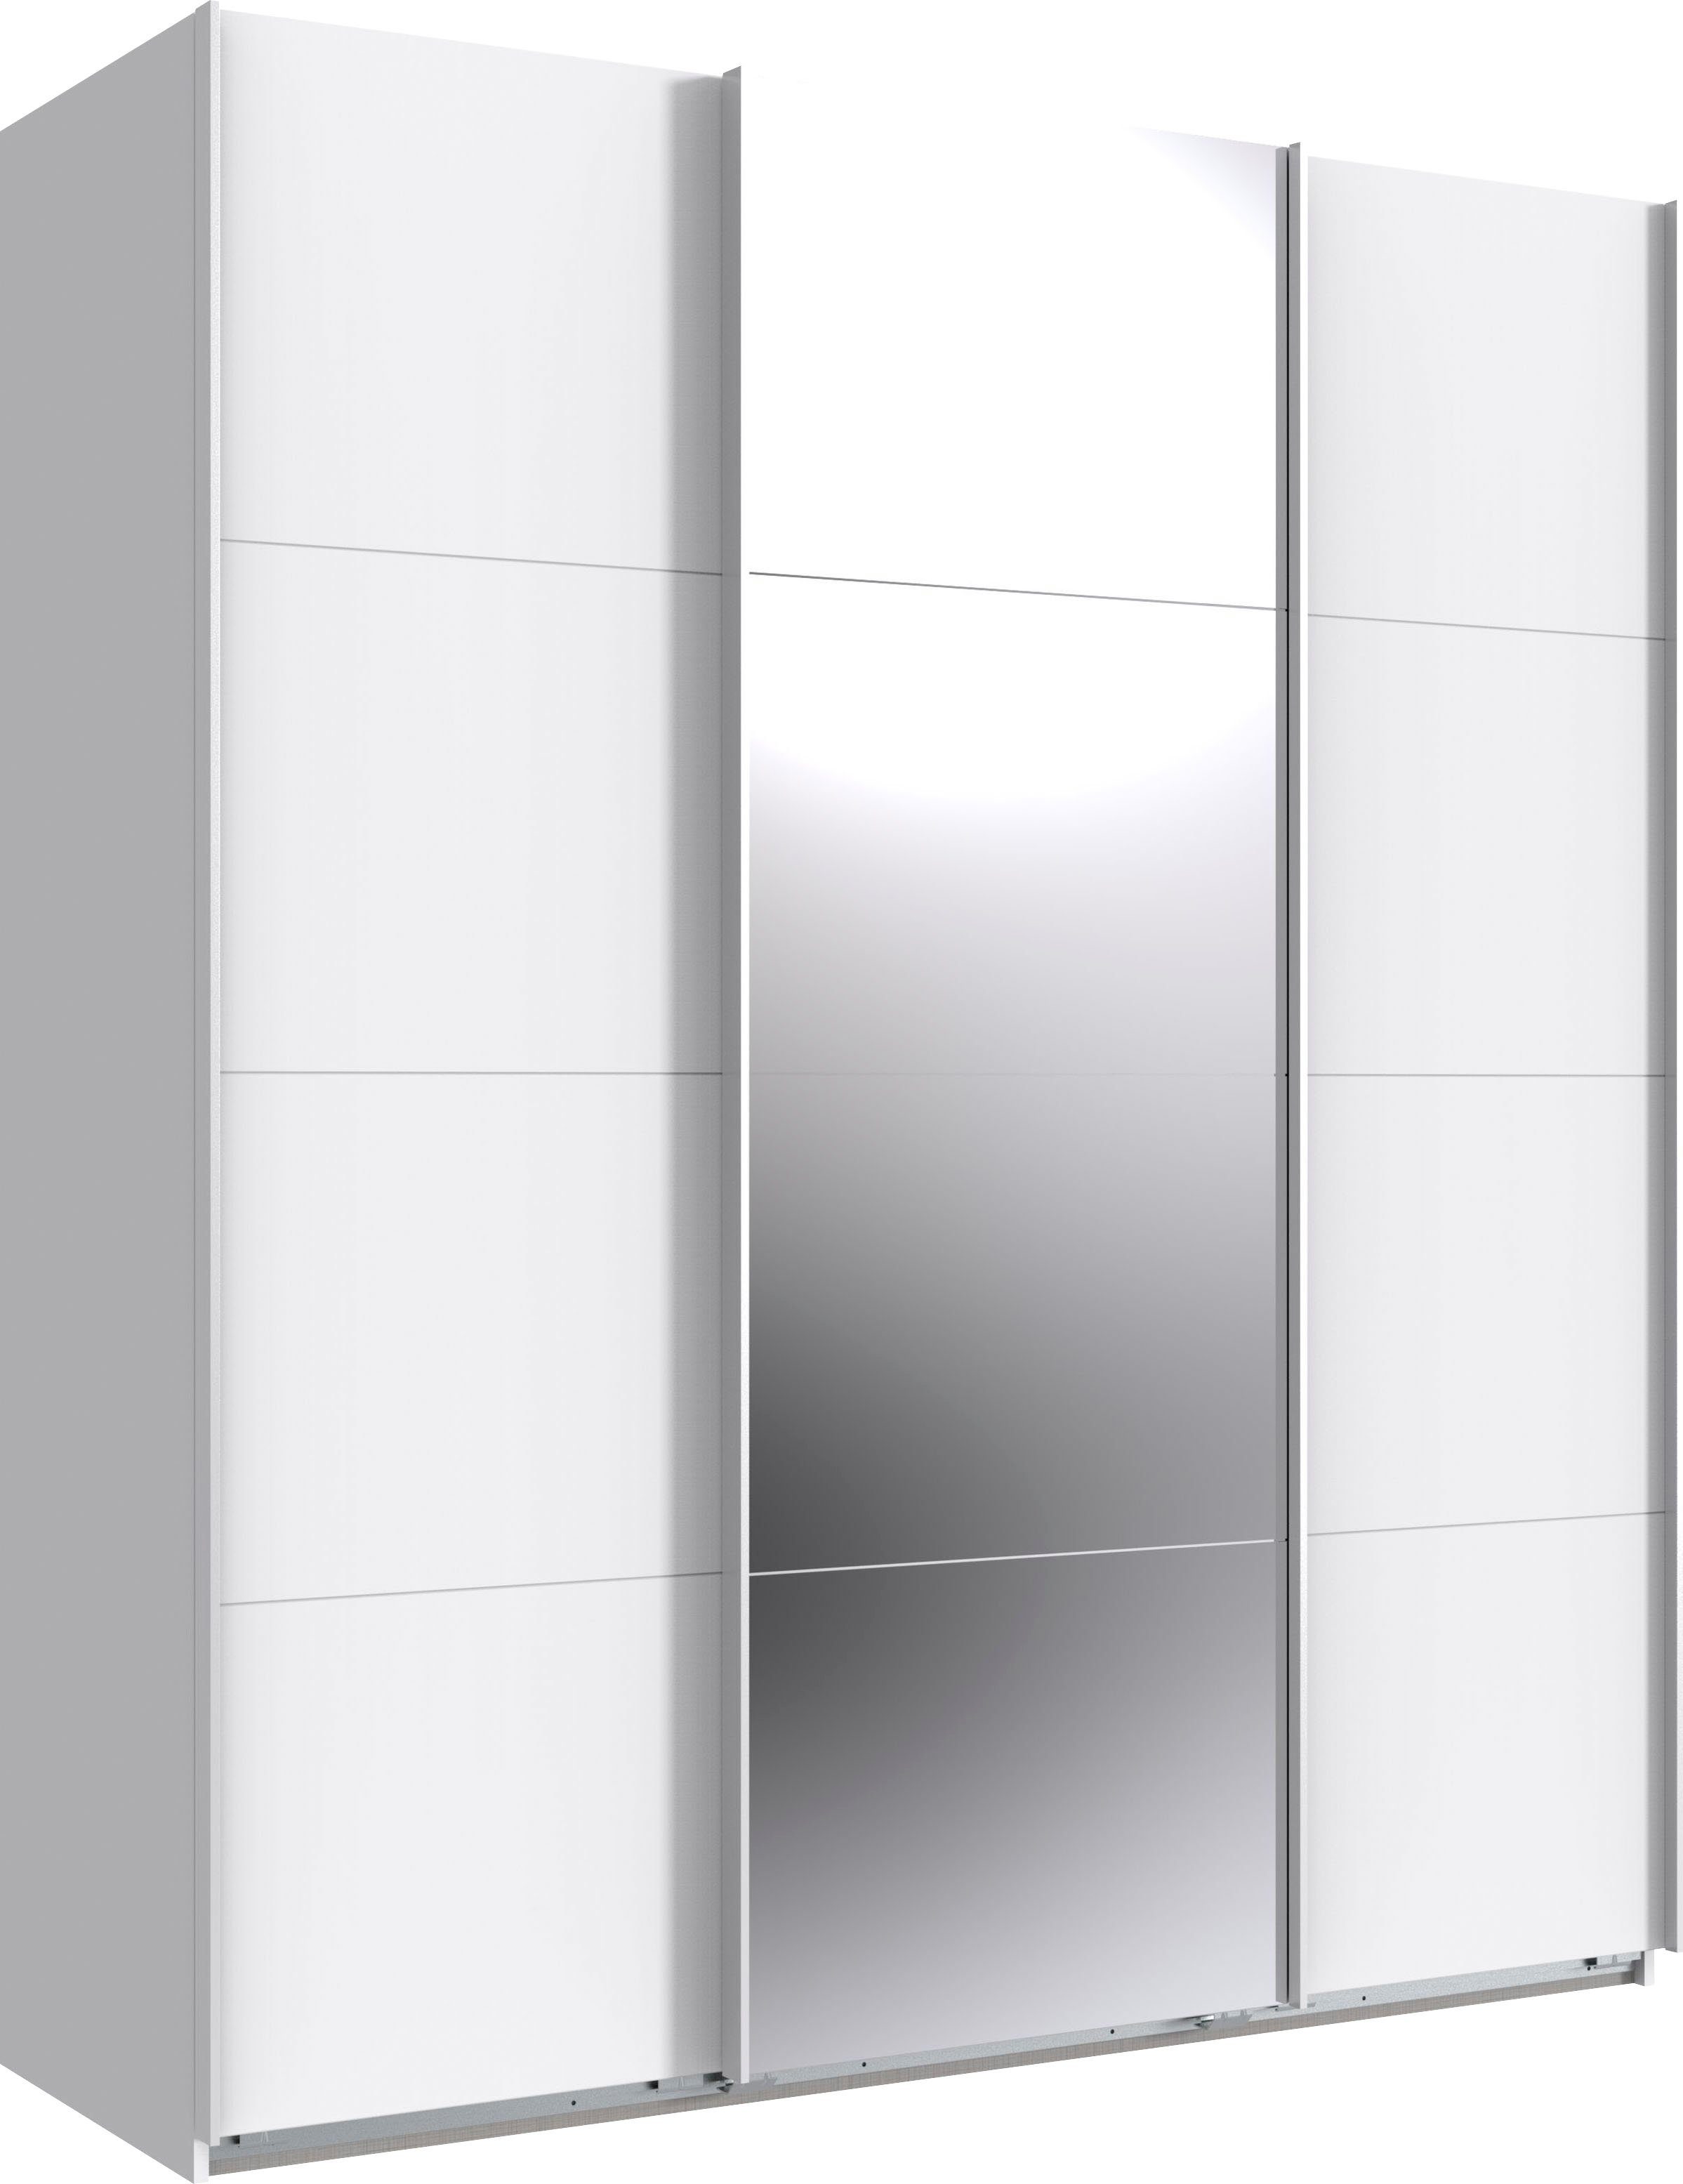 INKLUSIVE 2 zusätzliche Weiß/ und Einlegeböden Norderstedt 2 Wimex Schwebetürenschrank | Stoffboxen Spiegel Weiß